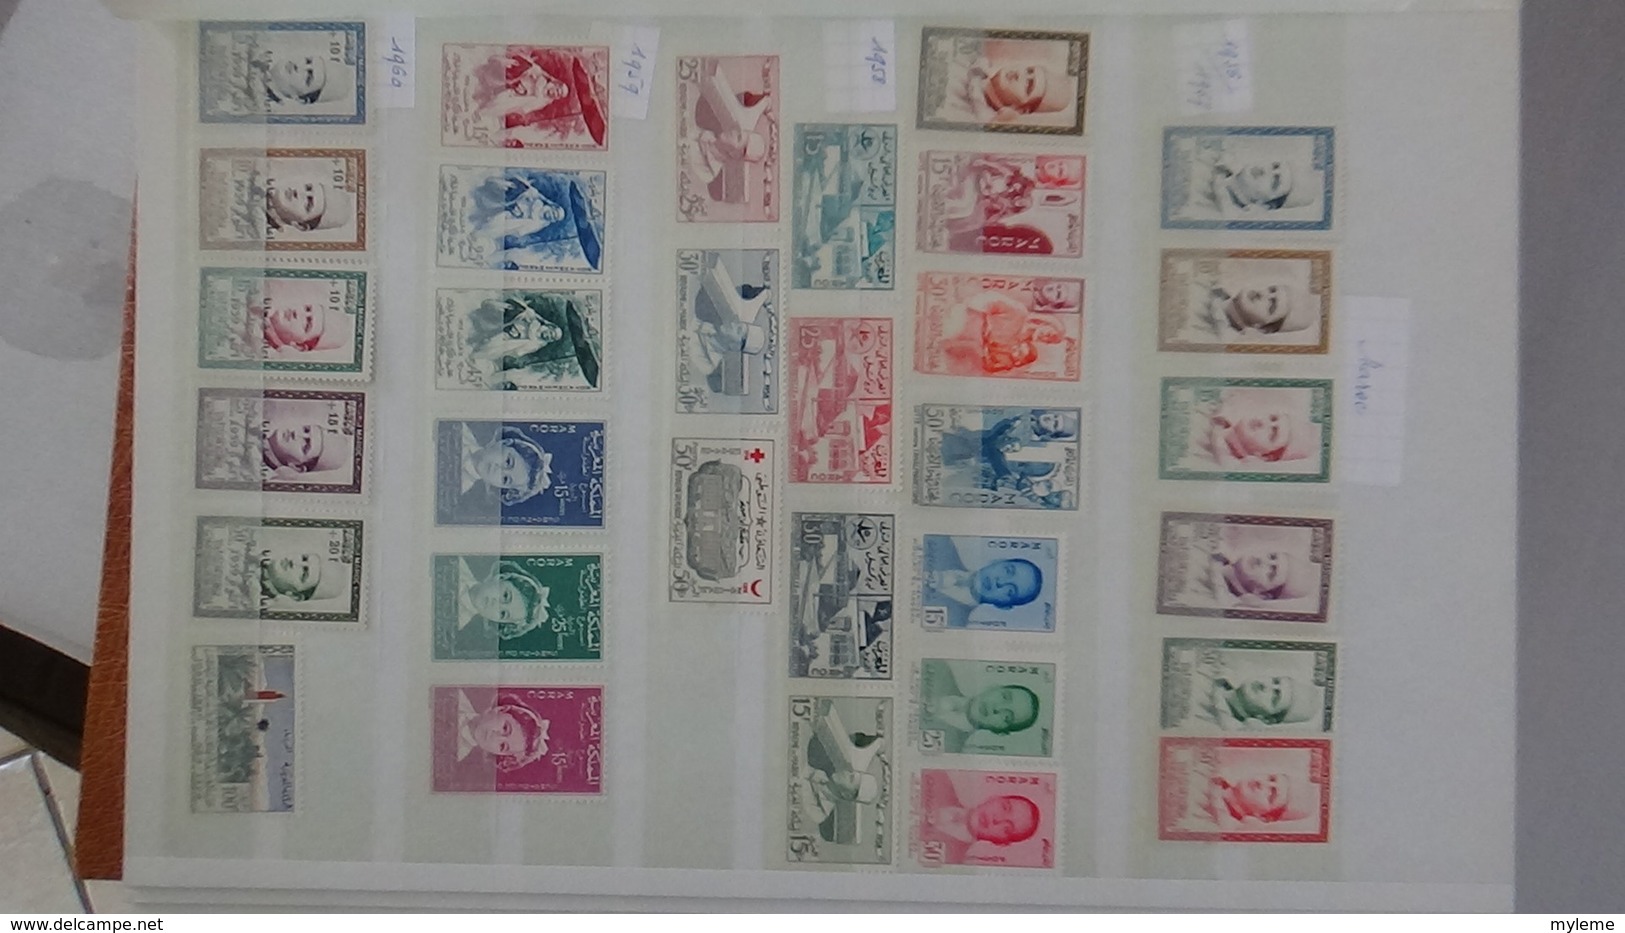 D17 Dispersion d'une très grosse collection de timbres et blocs ** dont Mali,Maroc, Mauritanie. Voir commentair